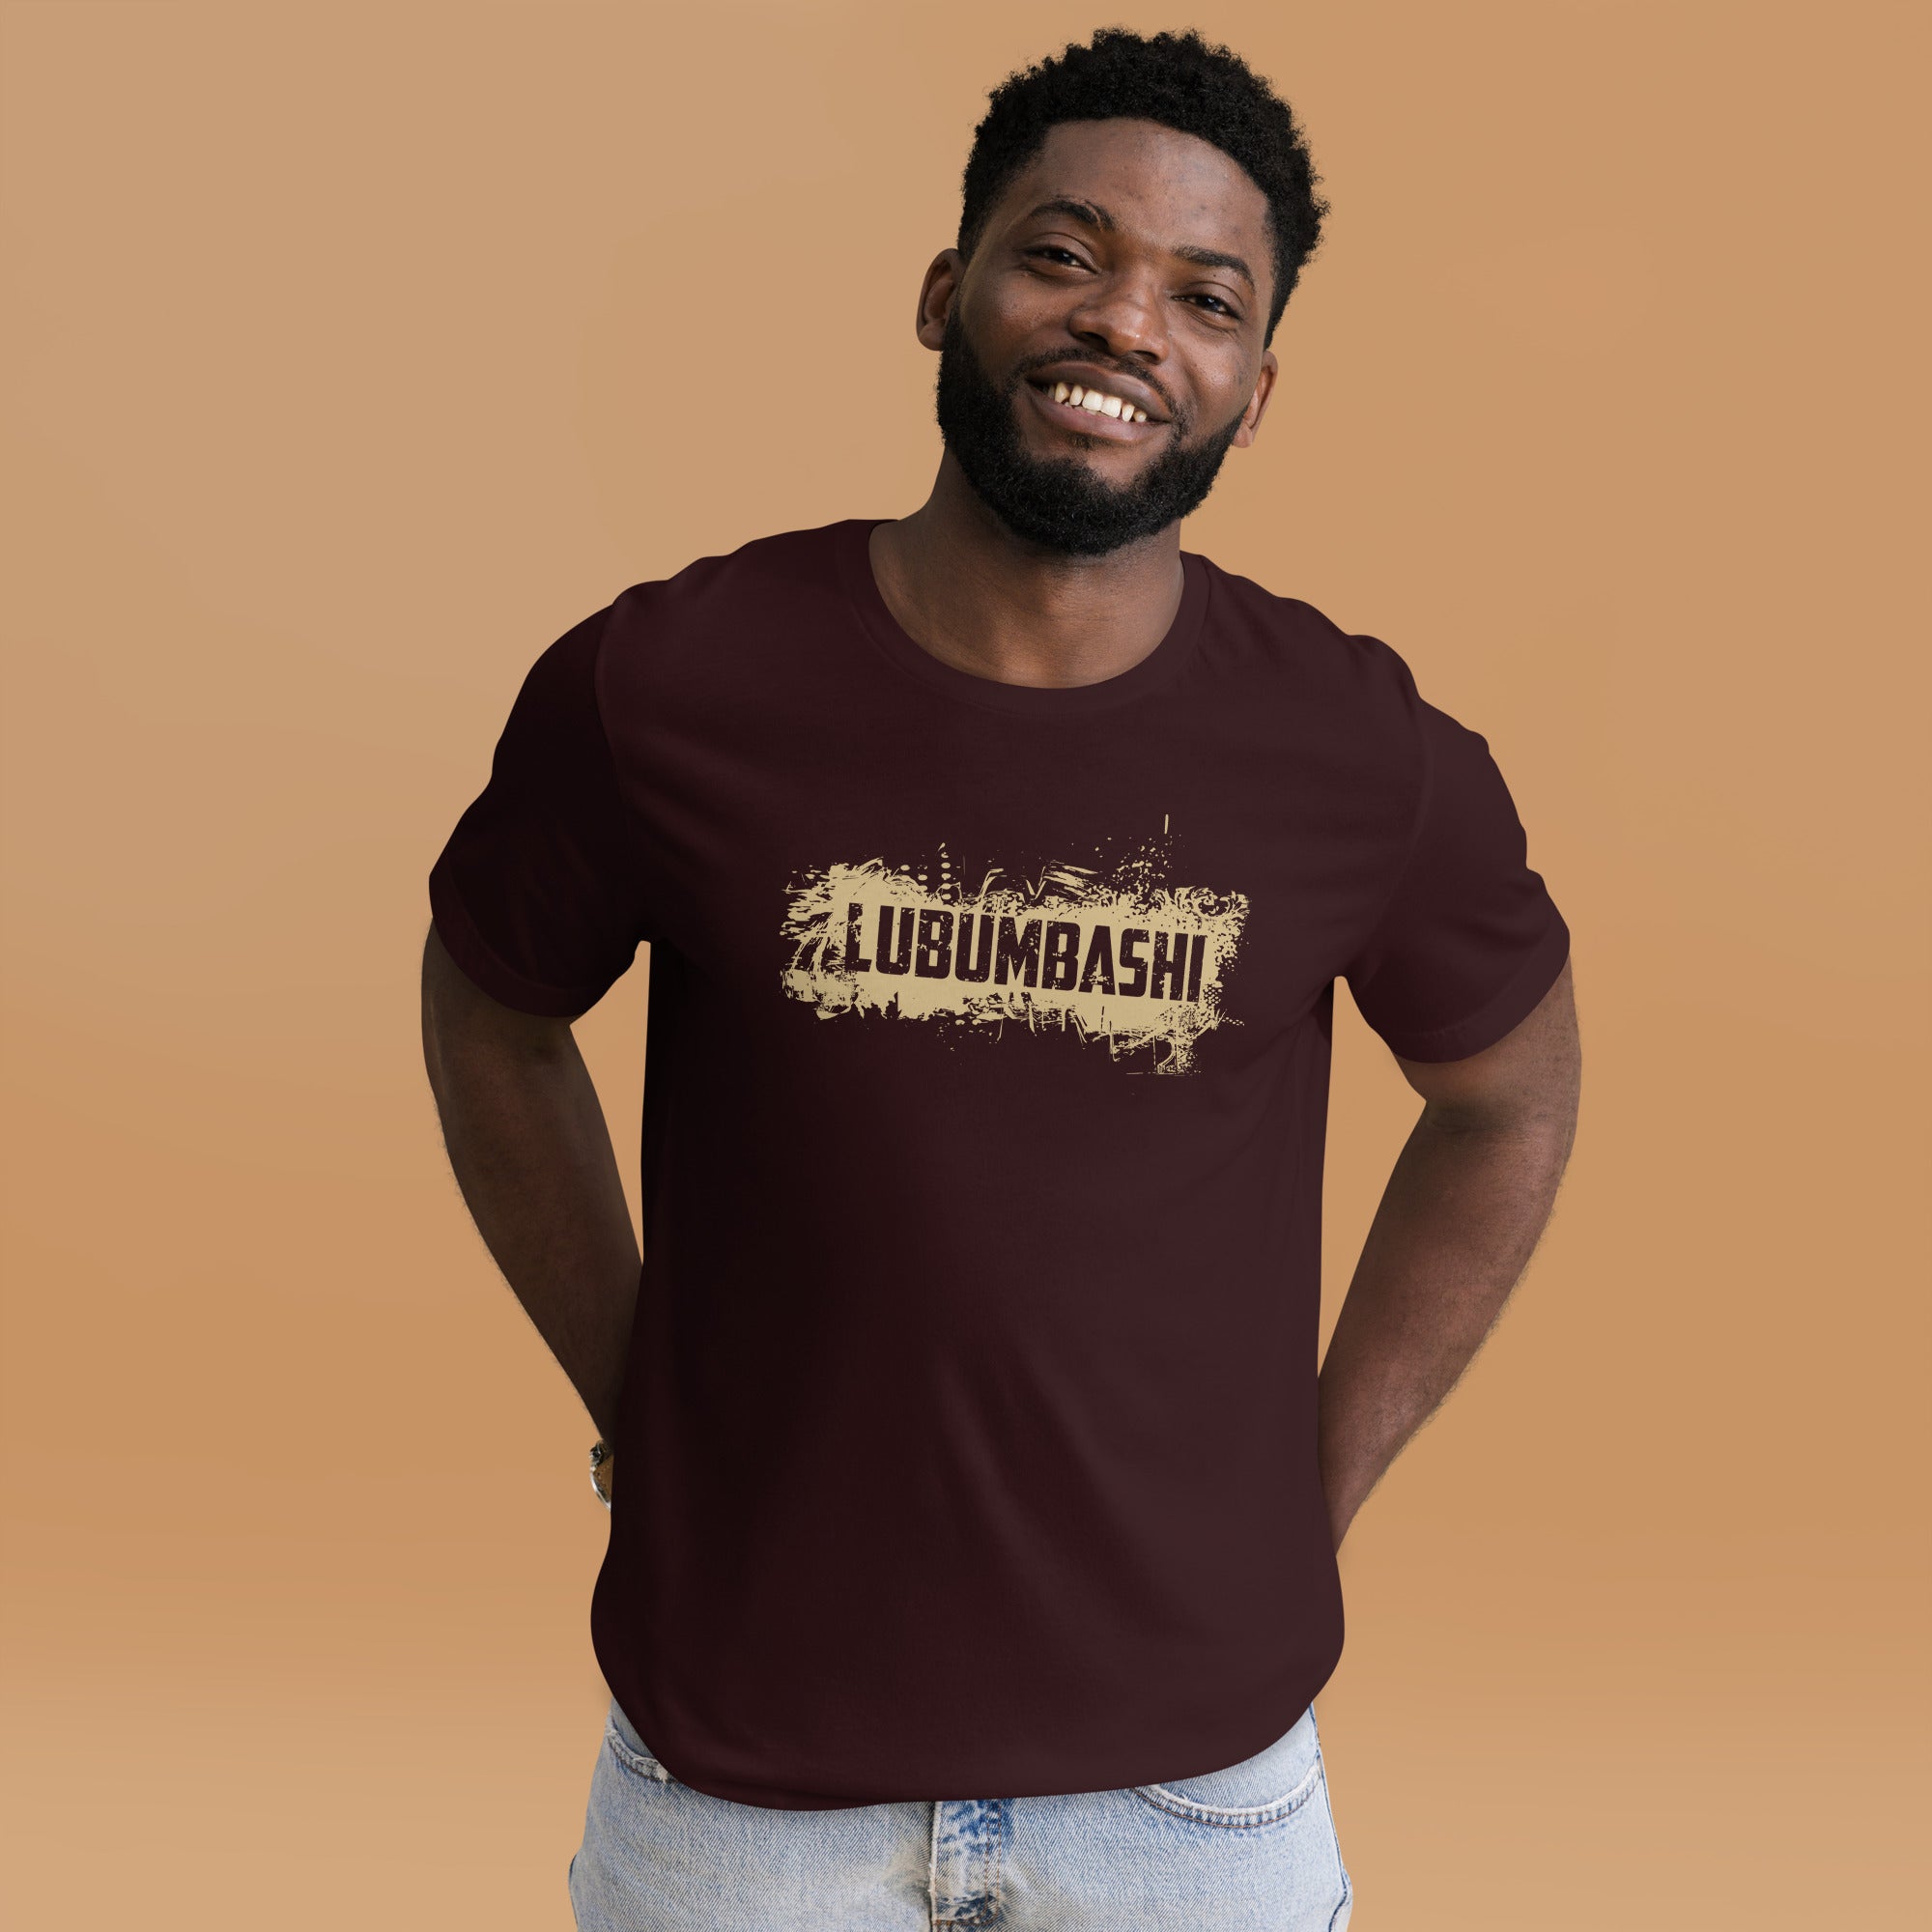 GentleGrip - "Lubumbashi"